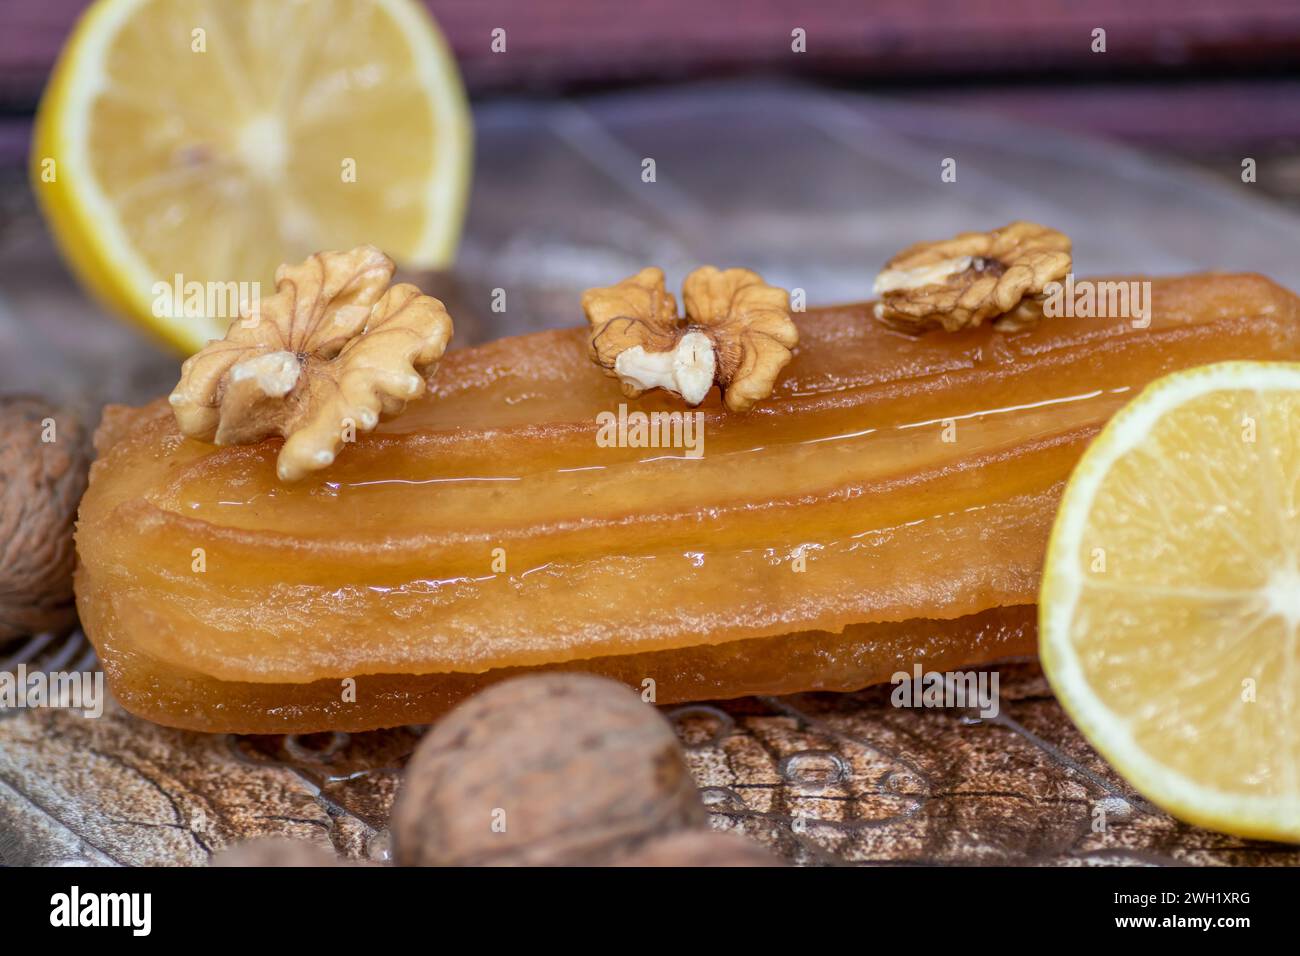 Torta dolce turca chiamata tulumba, servita al piatto con fette di limone e noci intorno, su un enorme tavolo di legno Foto Stock